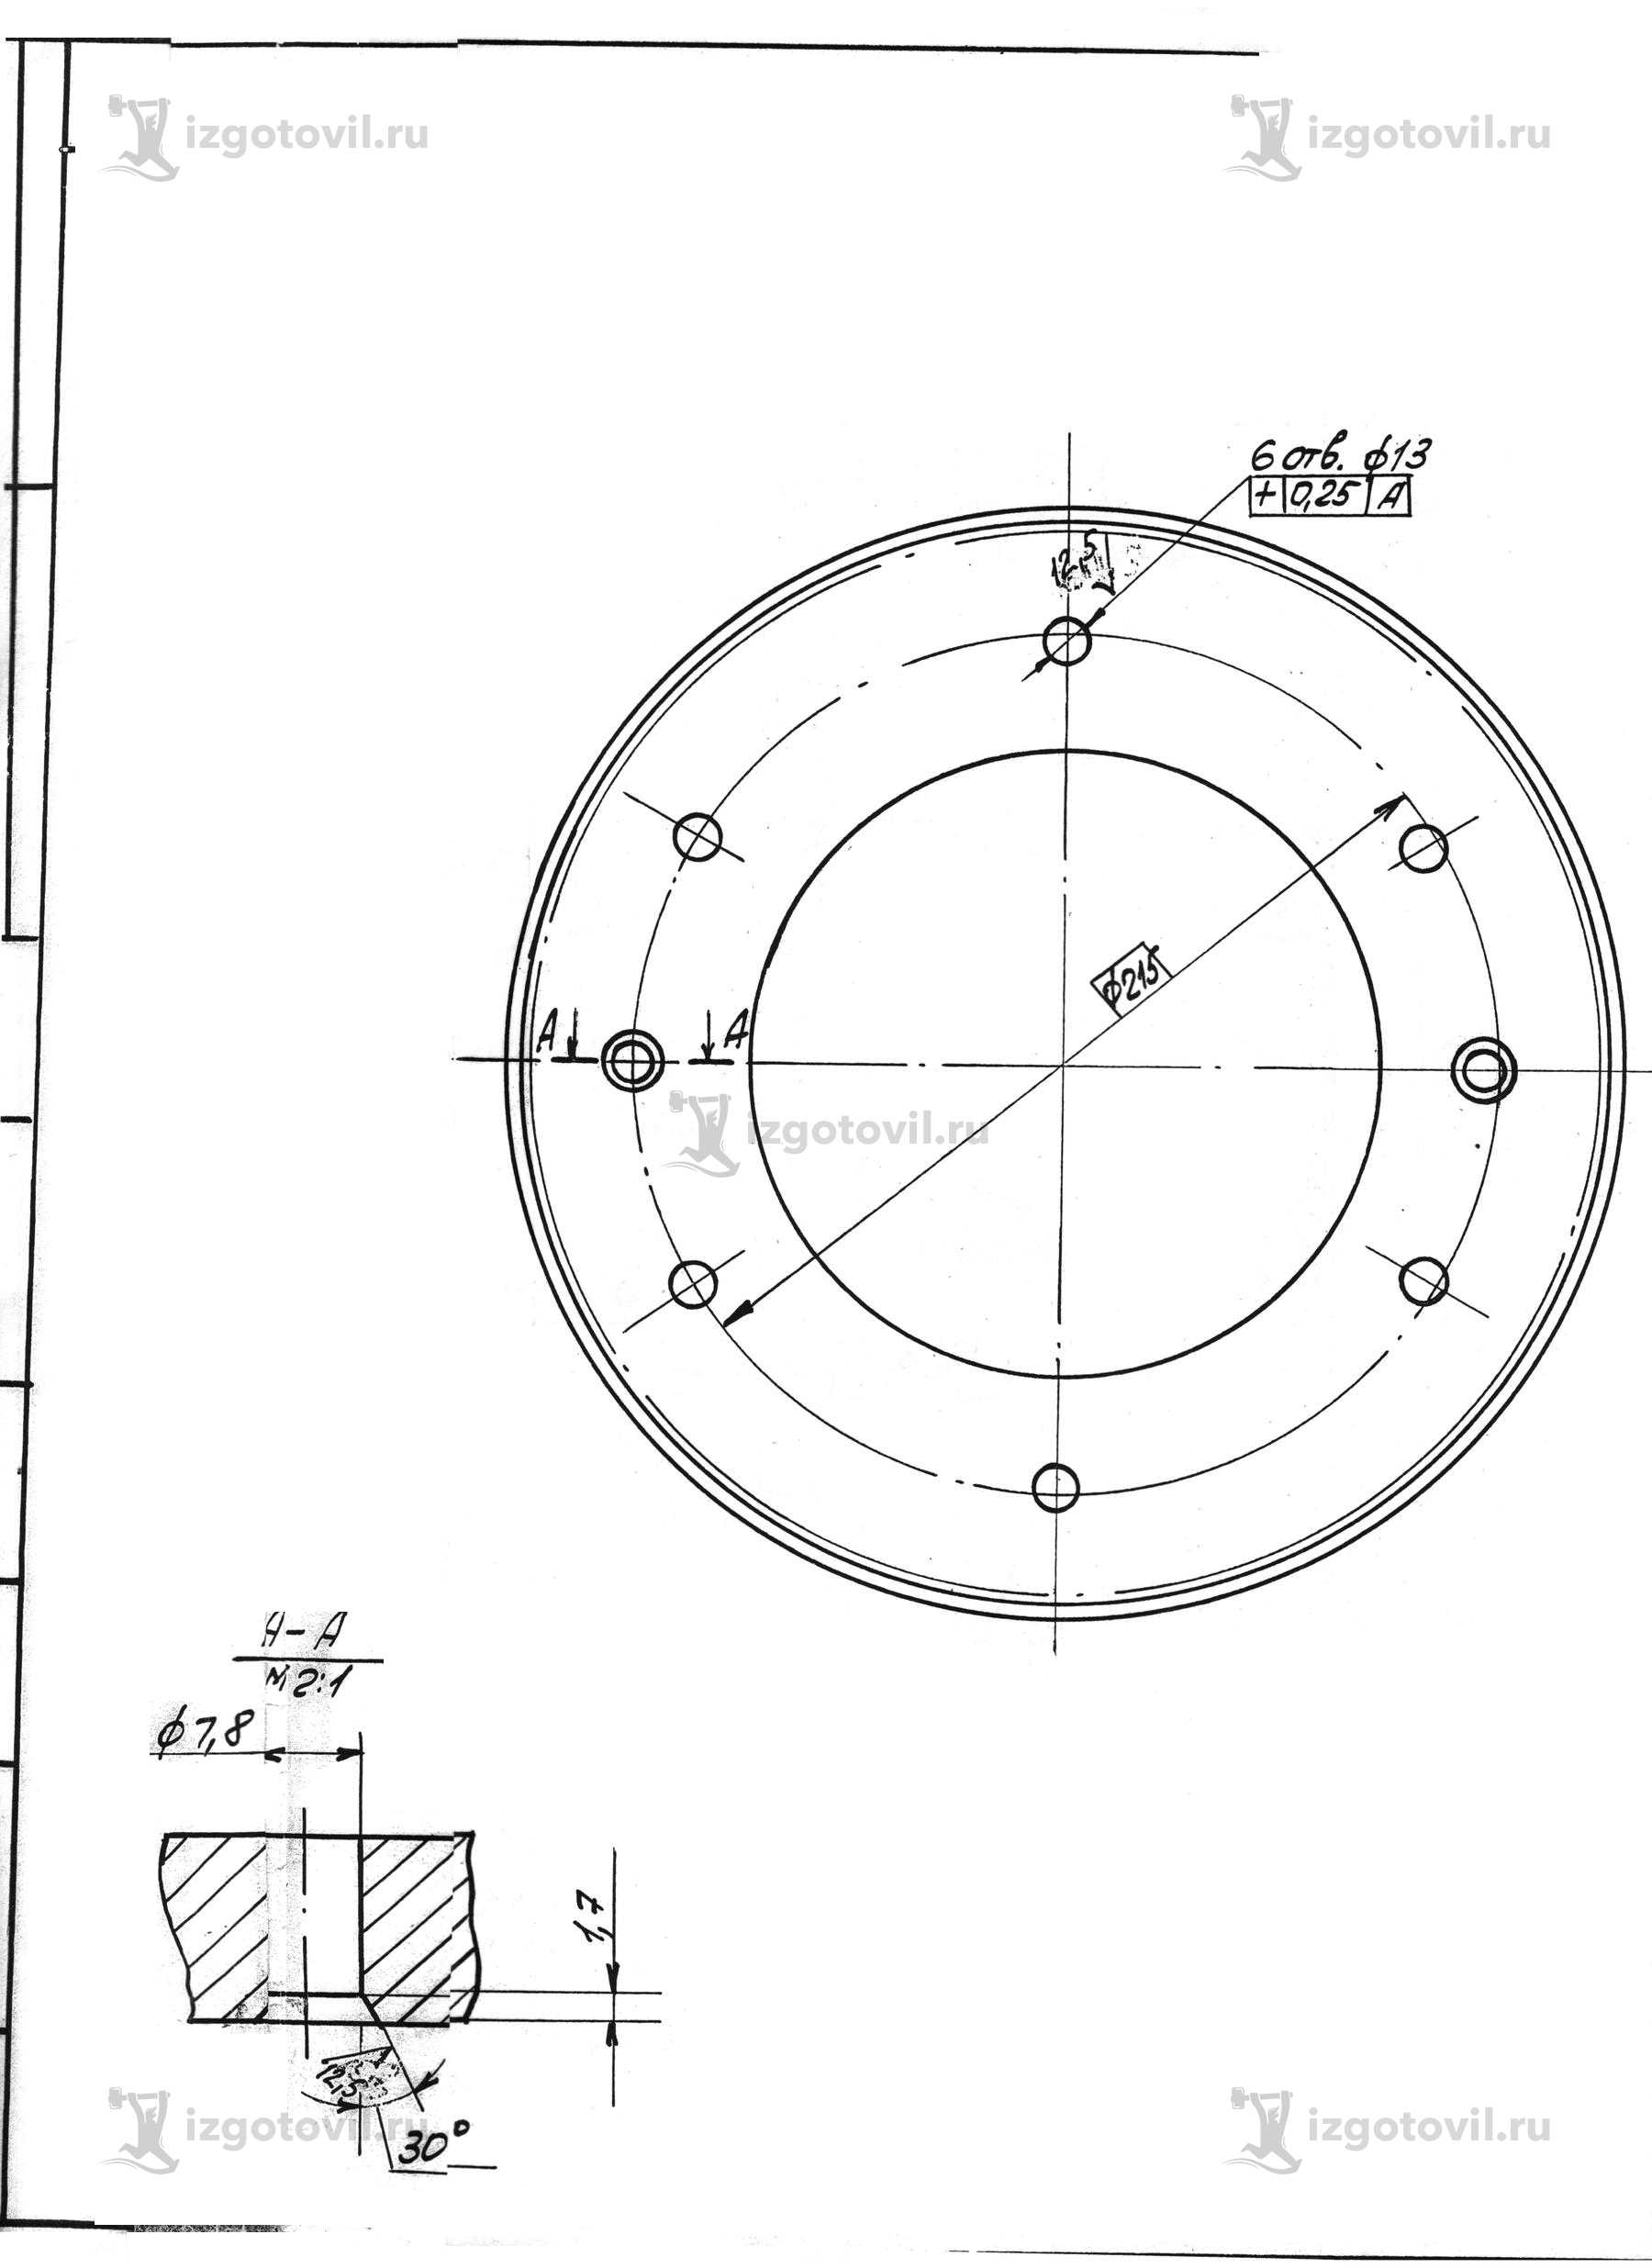 Изготовление деталей по чертежам: рейка, стакан, колёса зубчатые и звёздочки